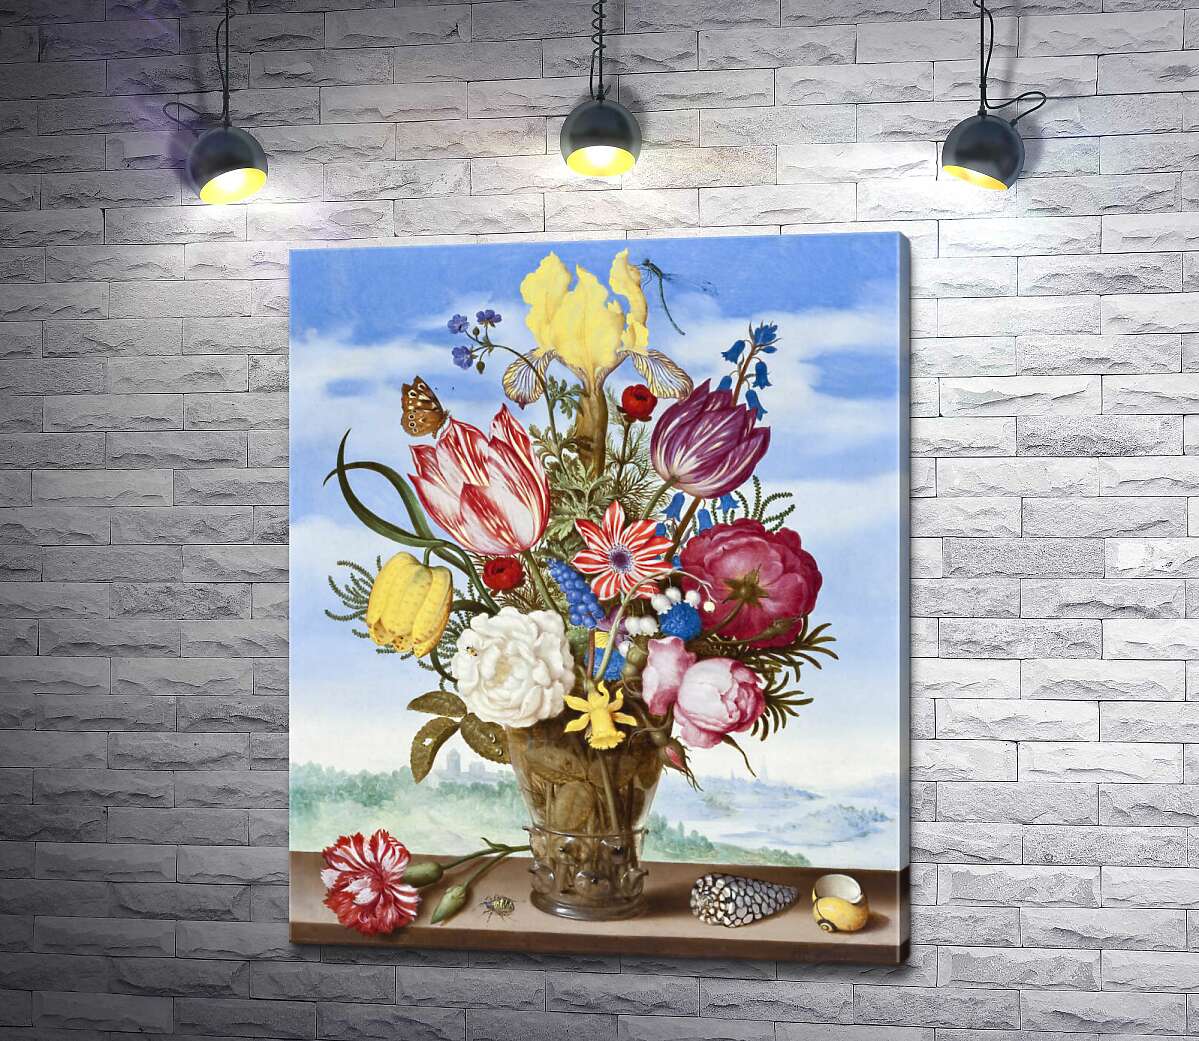 картина Букет цветов на выступе (Bouquet of Flowers on a Ledge) - Амброзиус Босхарт Старший (Ambrosius Bosschaert the Elder)